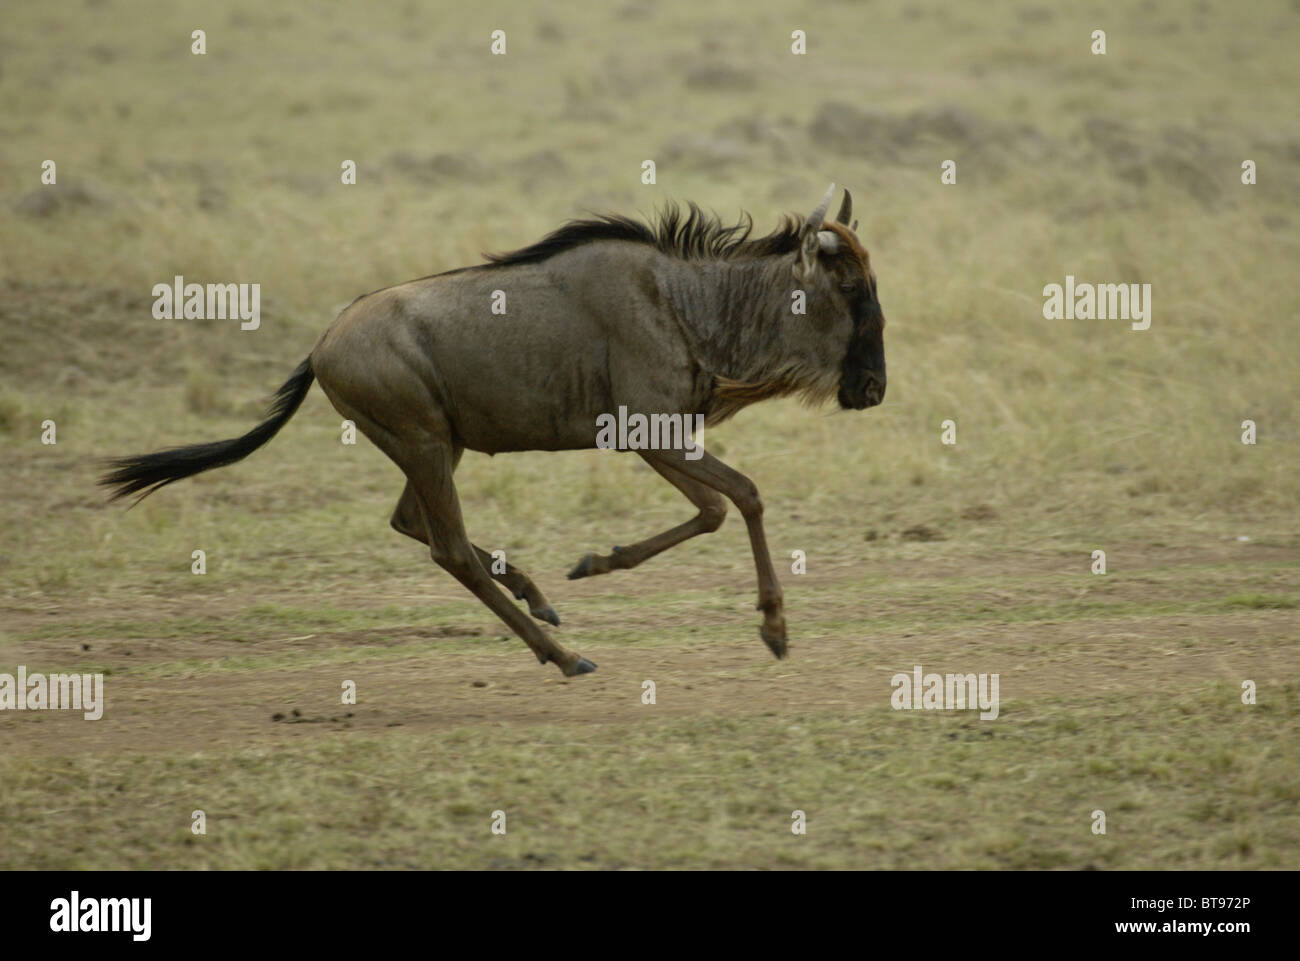 Eastern wildebeest (Connochaetus taurinus albojubatus), adult running, Masai Mara, Kenya, Africa Stock Photo